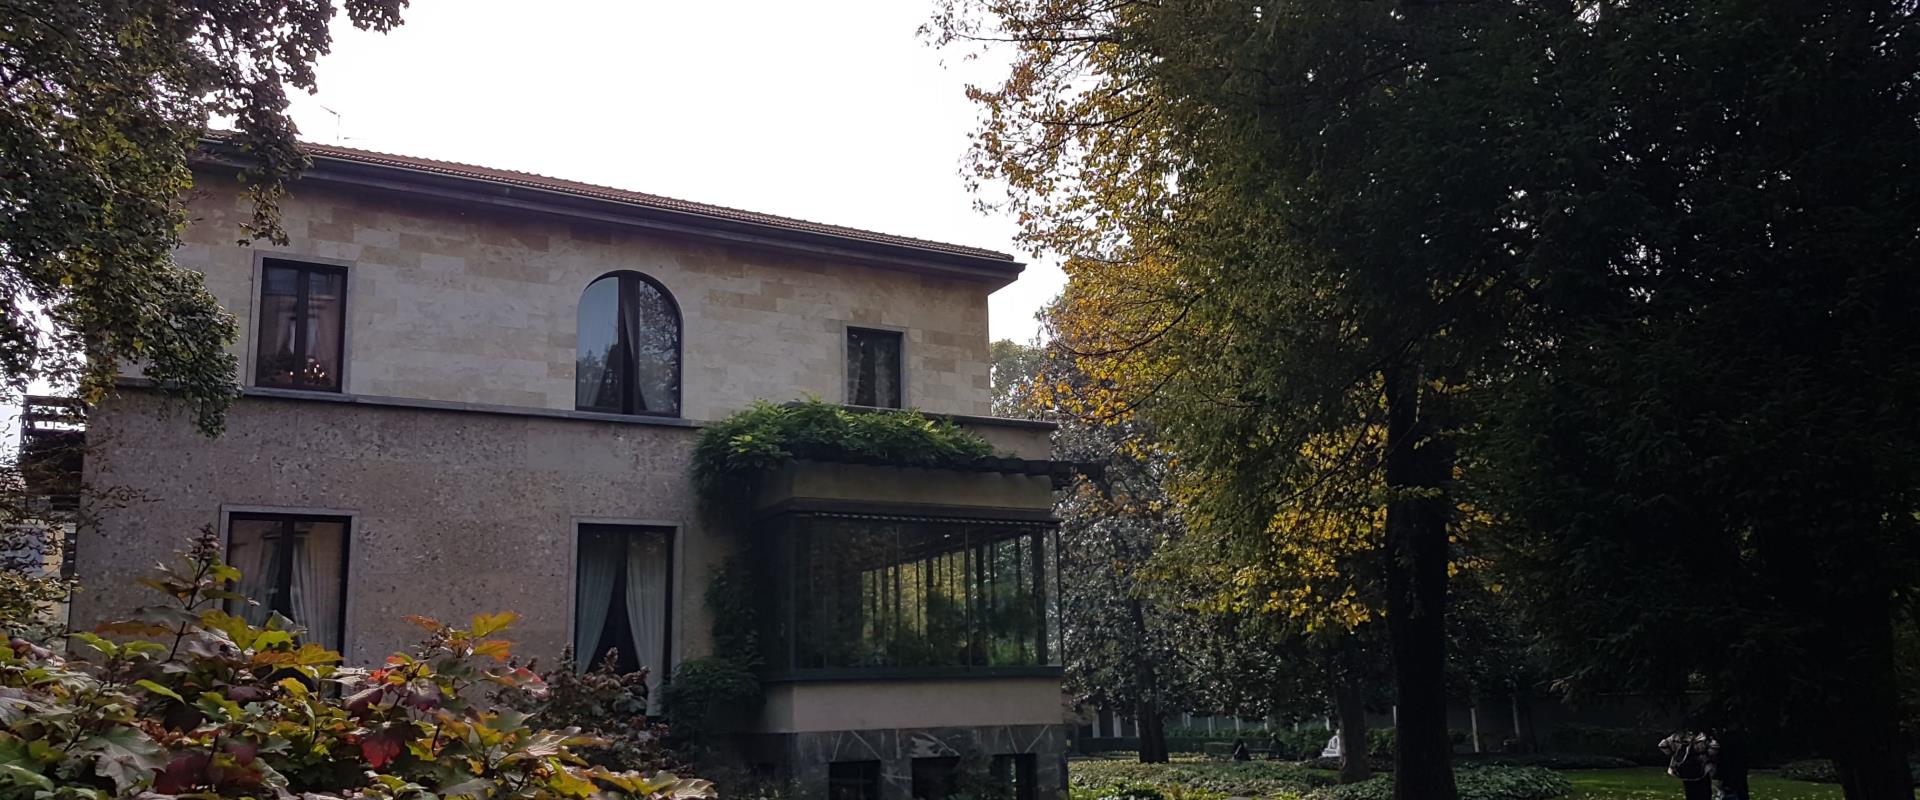 Soggiorna Al Best Western Hotel City a Milano e scopri le migliori attrazioni della città. A pochi minuti di cammino dall''Hotel puoi visitare Villa Necchi Campiglio, una splendida residenza storica, immersa in un rigoglioso giardino.